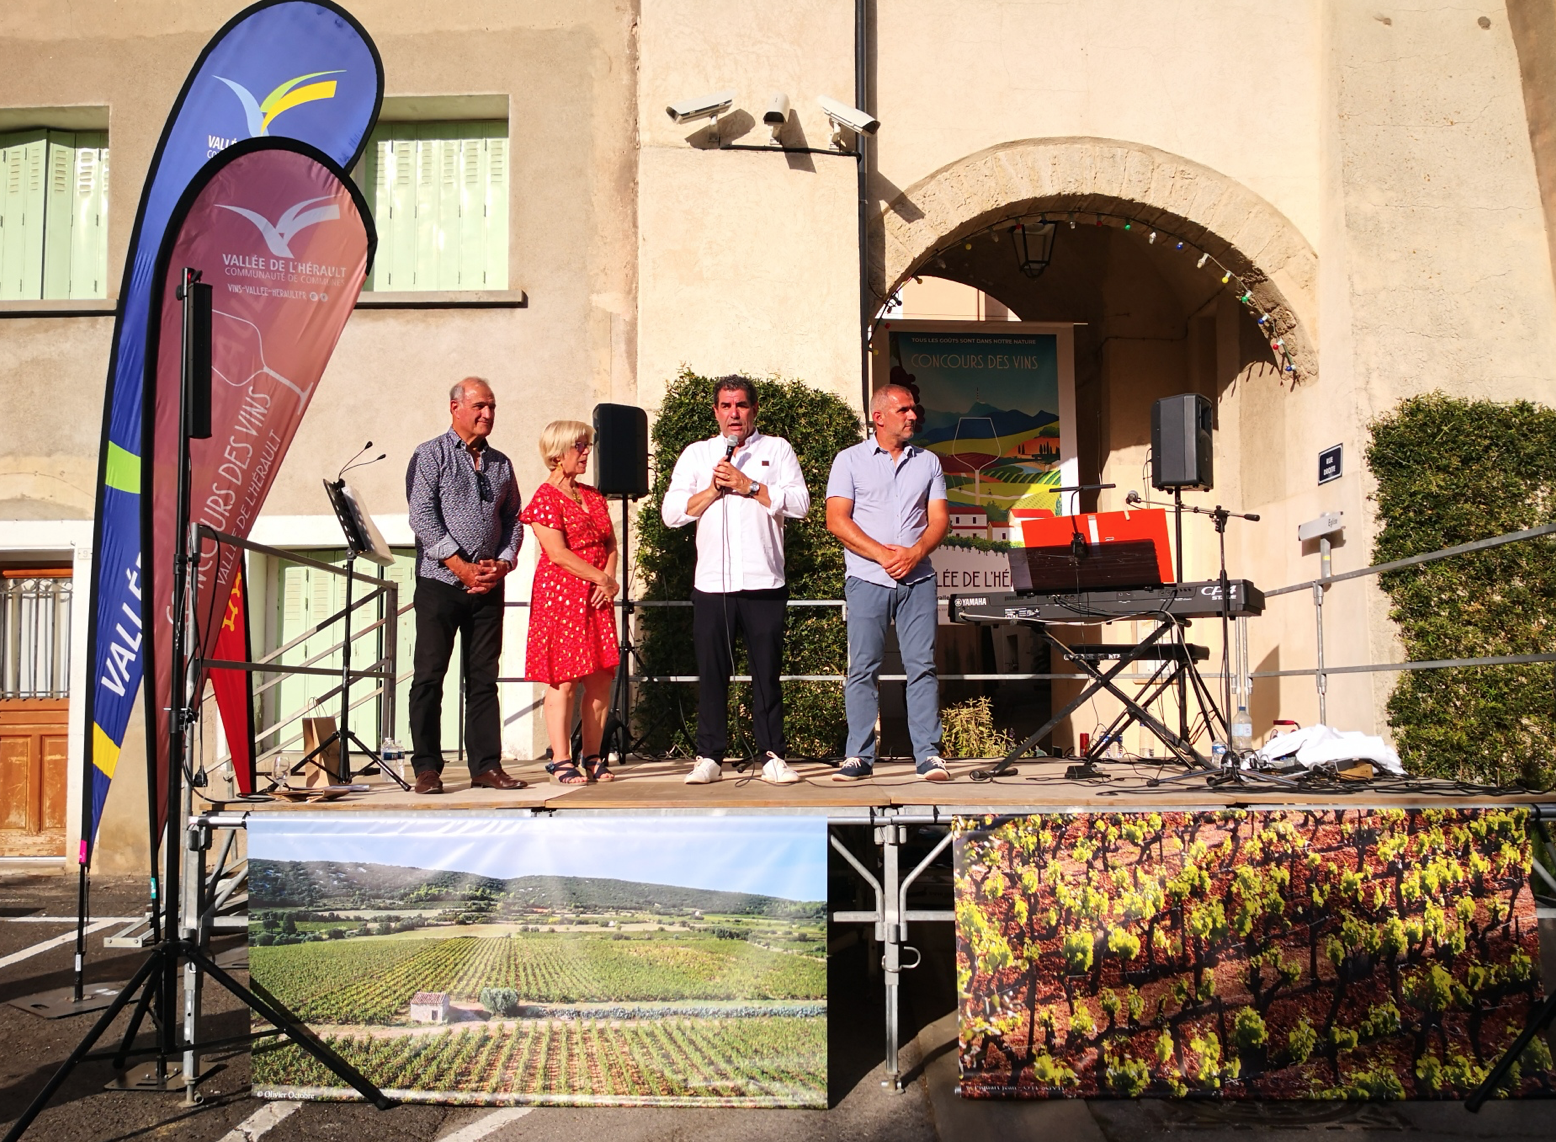 Comment faire rayonner les vins de la Vallée de l’Hérault ? Un atout économique pour le territoire